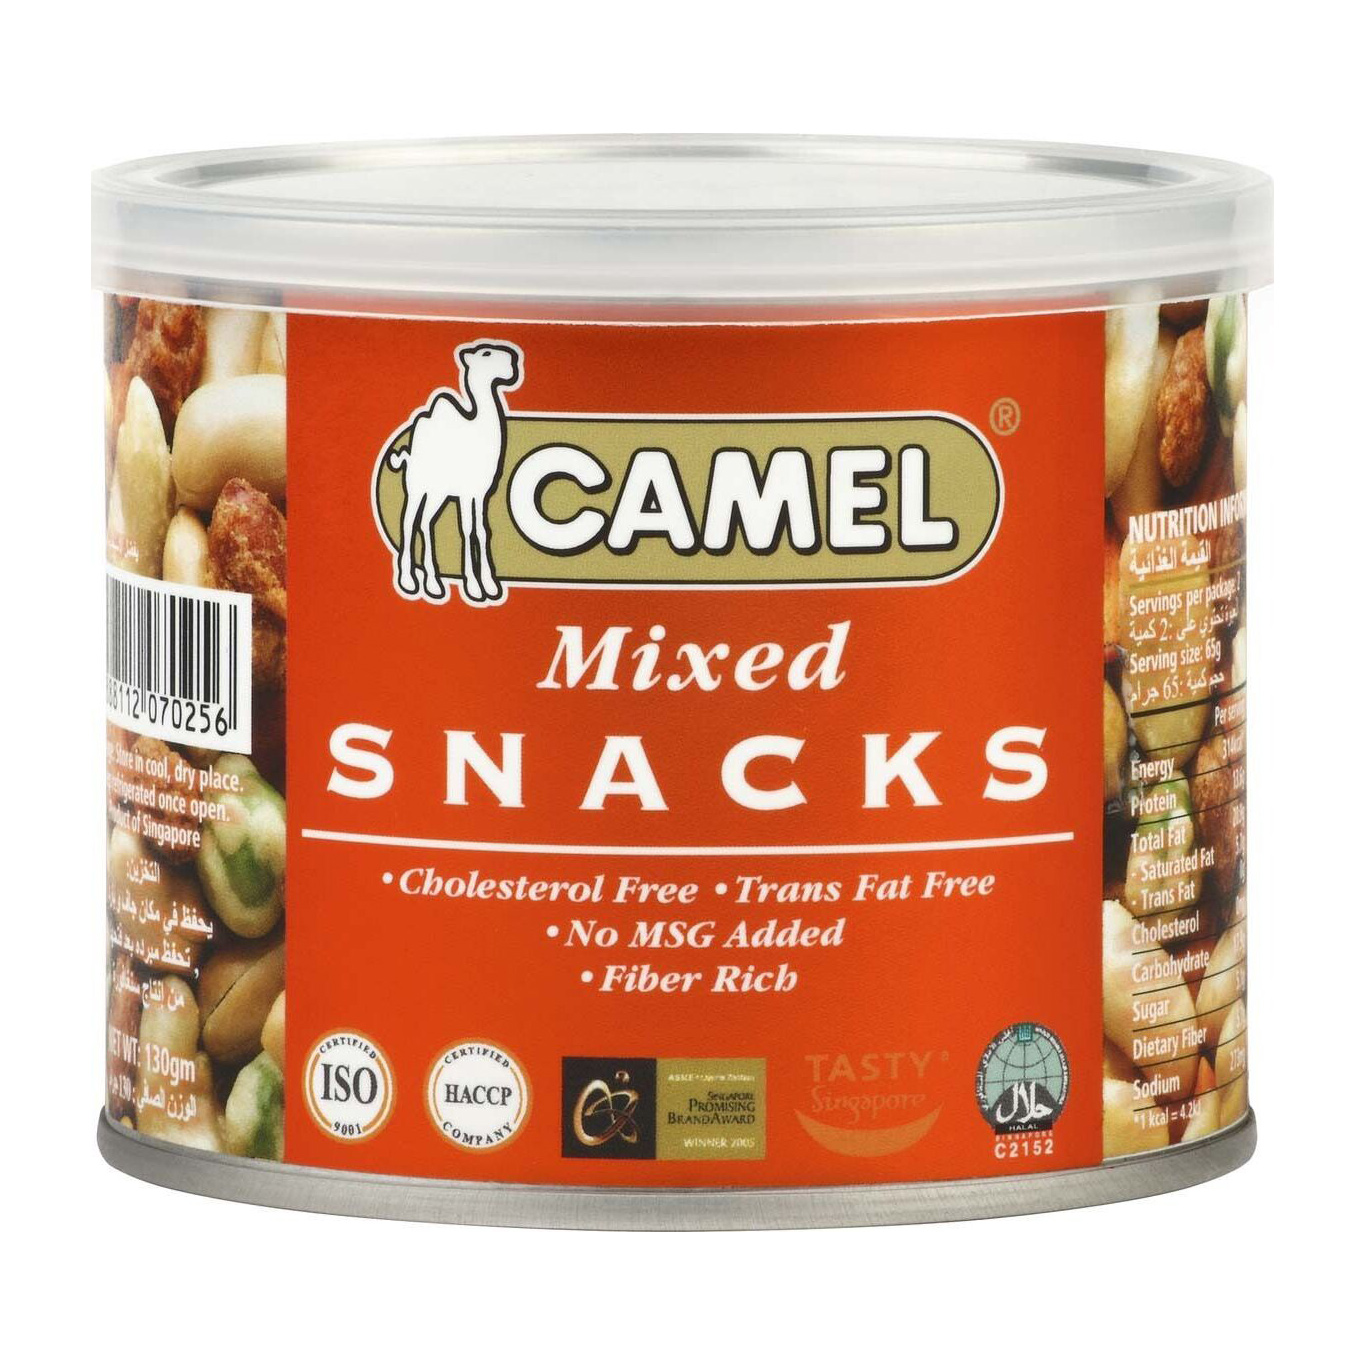 Смесь Camel из различных орехов, бобов, горошка Mixed snacks 130 г смесь из орехов и бобов nikbionut с сушеными овощами москва 150 г